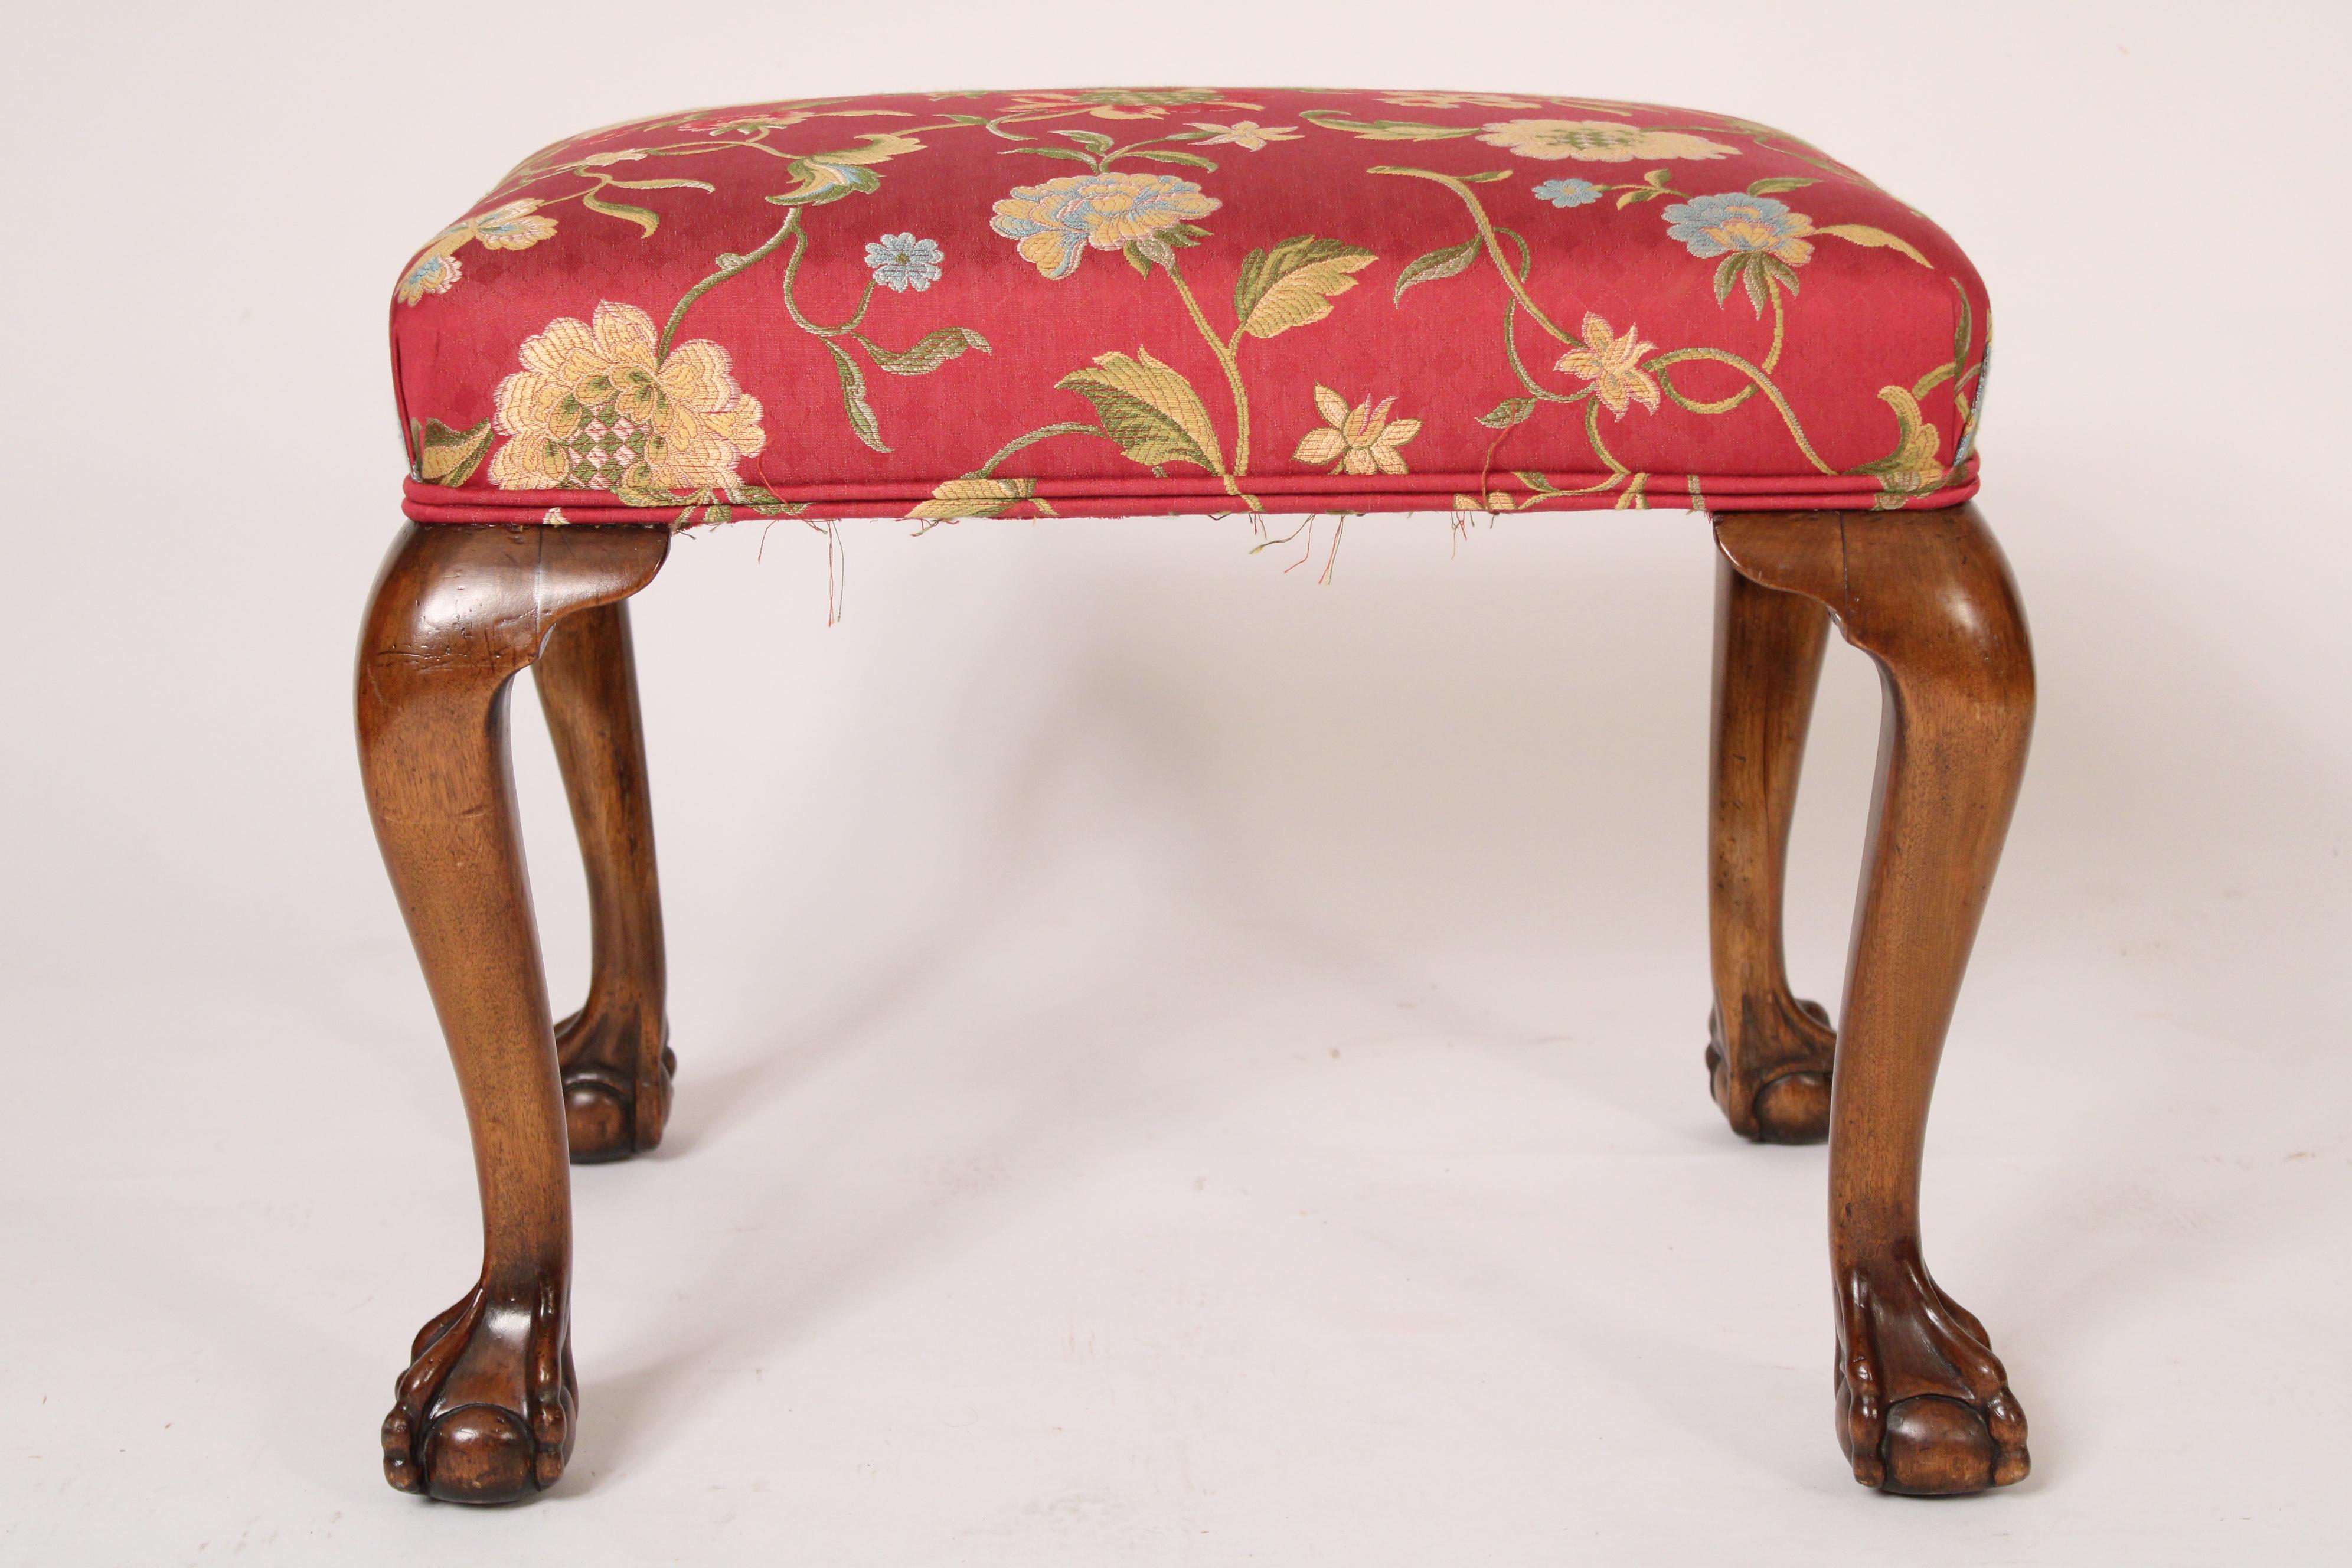 Banc ancien en acajou de style George II, fin du 19e siècle. L'assise, récemment tapissée de motifs floraux, repose sur des pieds cabriole terminés par des pieds boule et griffe.